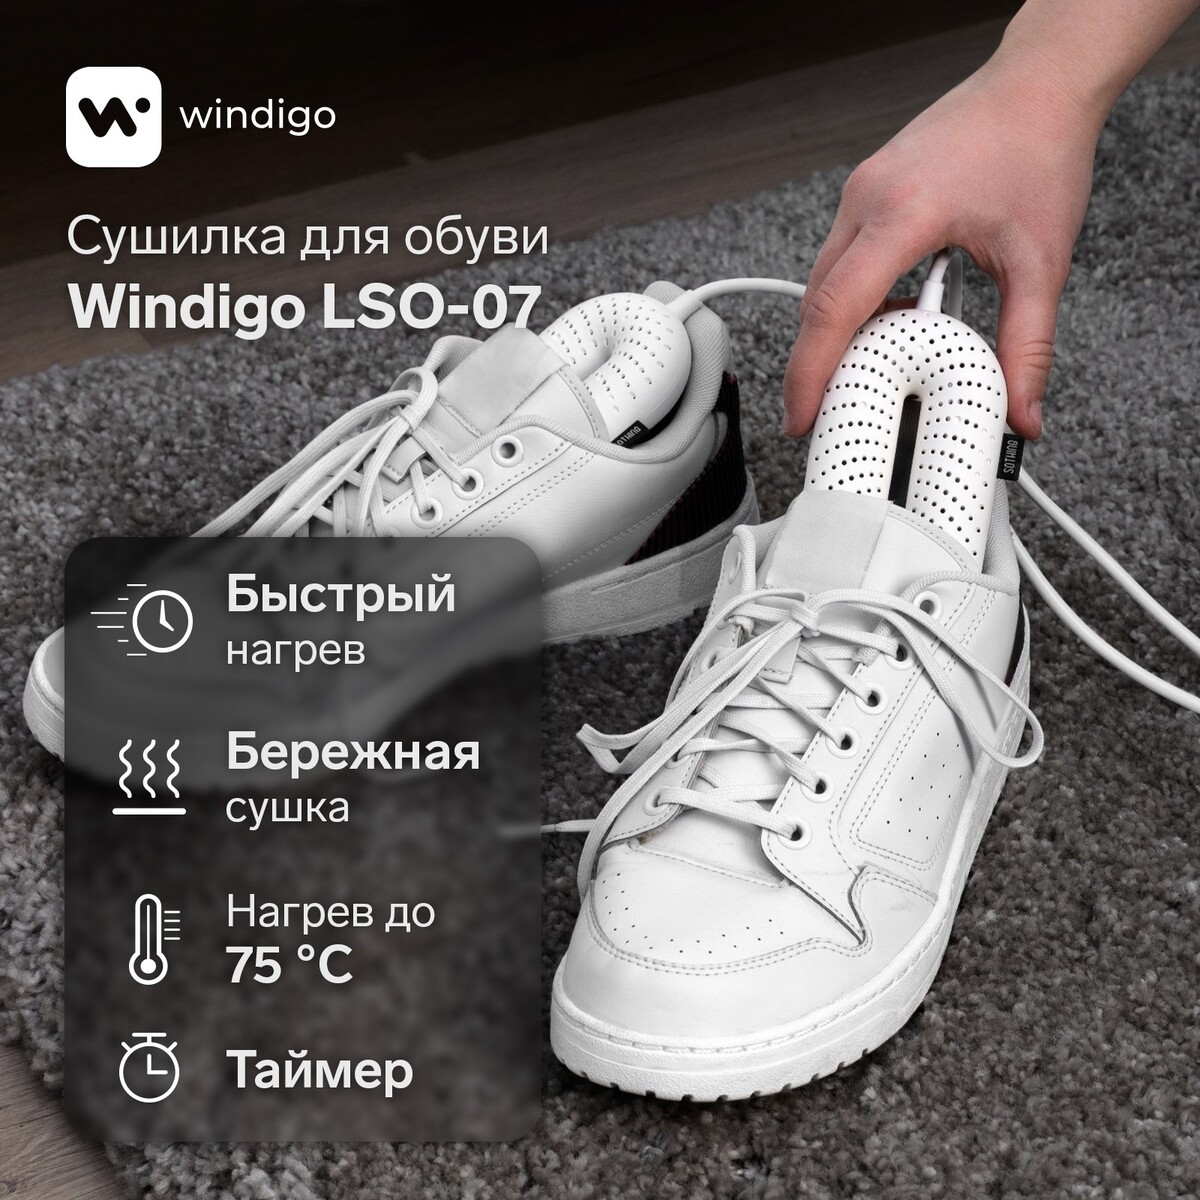 Сушилка для обуви windigo lso-07, 17 см, 20 вт, индикатор, таймер 3/6/9 часов, белая timson сушилка для обуви противогрибковая